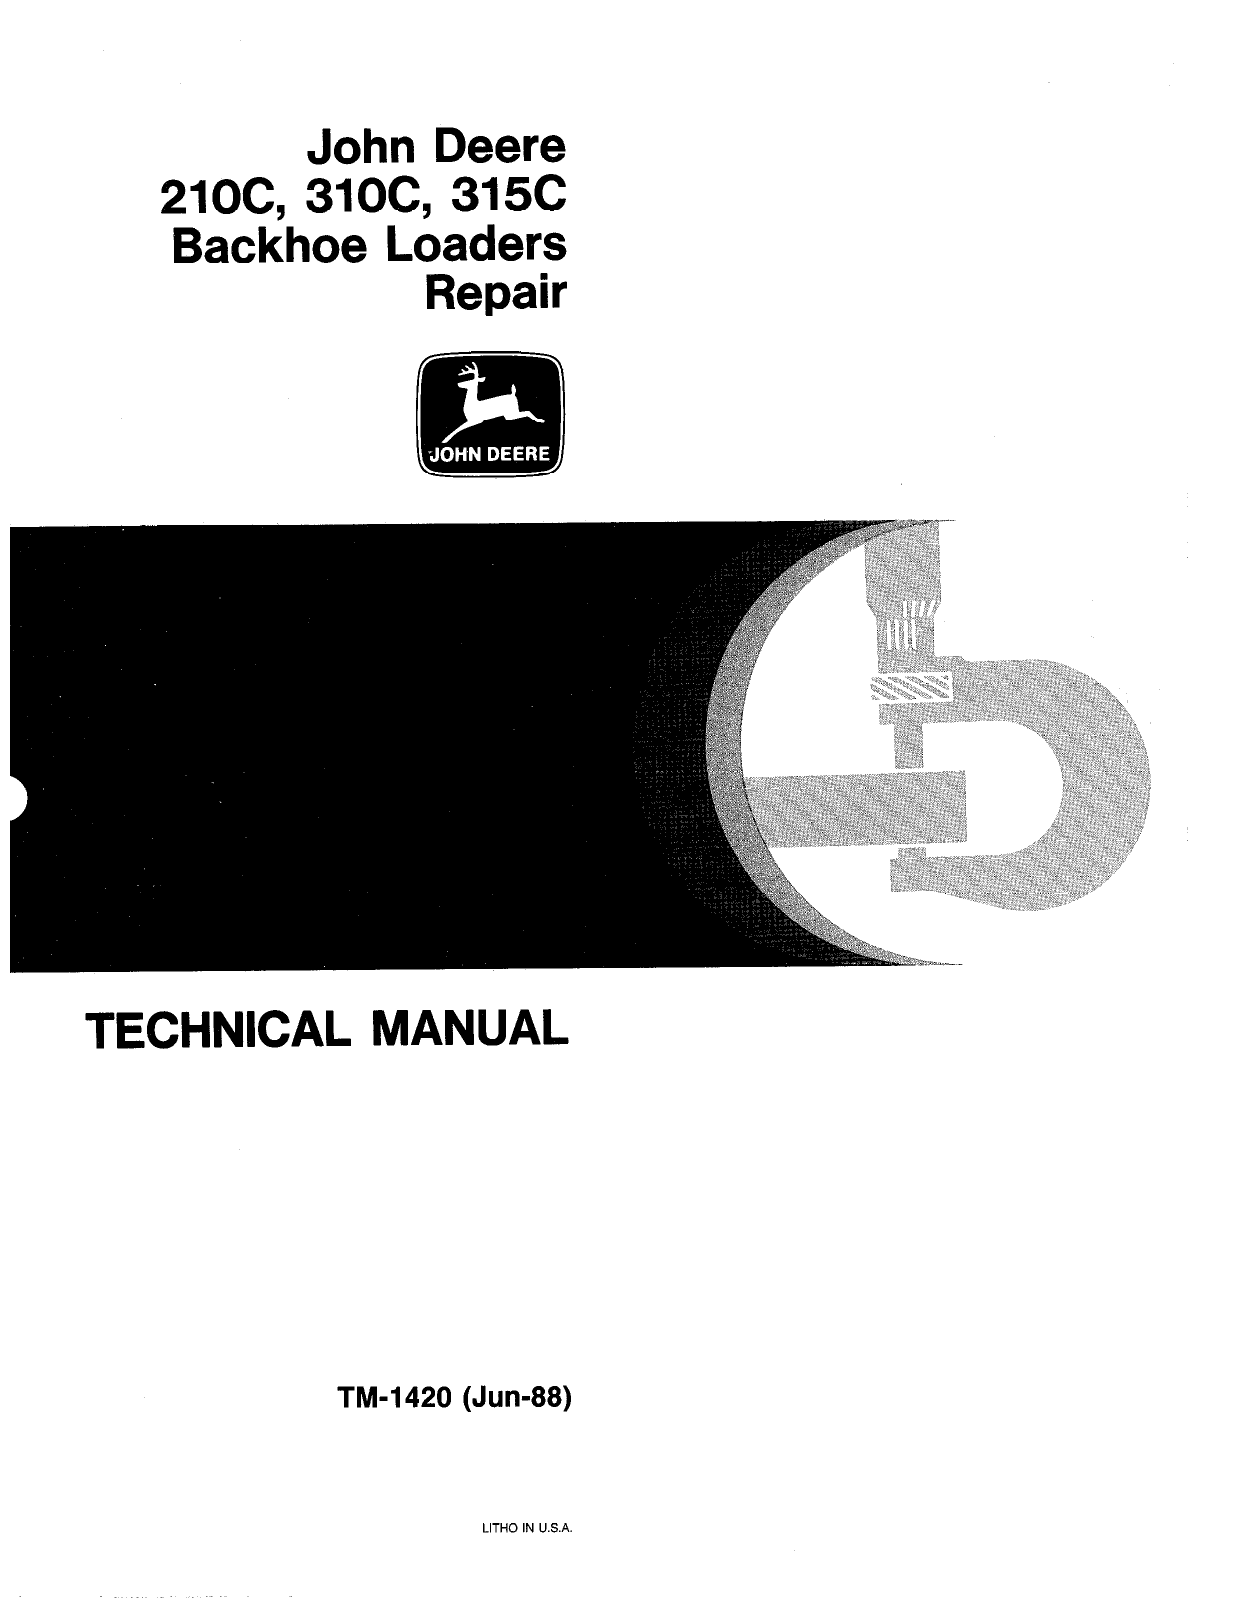 John Deere 210C, 310C, 315C backhoe loader technical manual Preview image 6